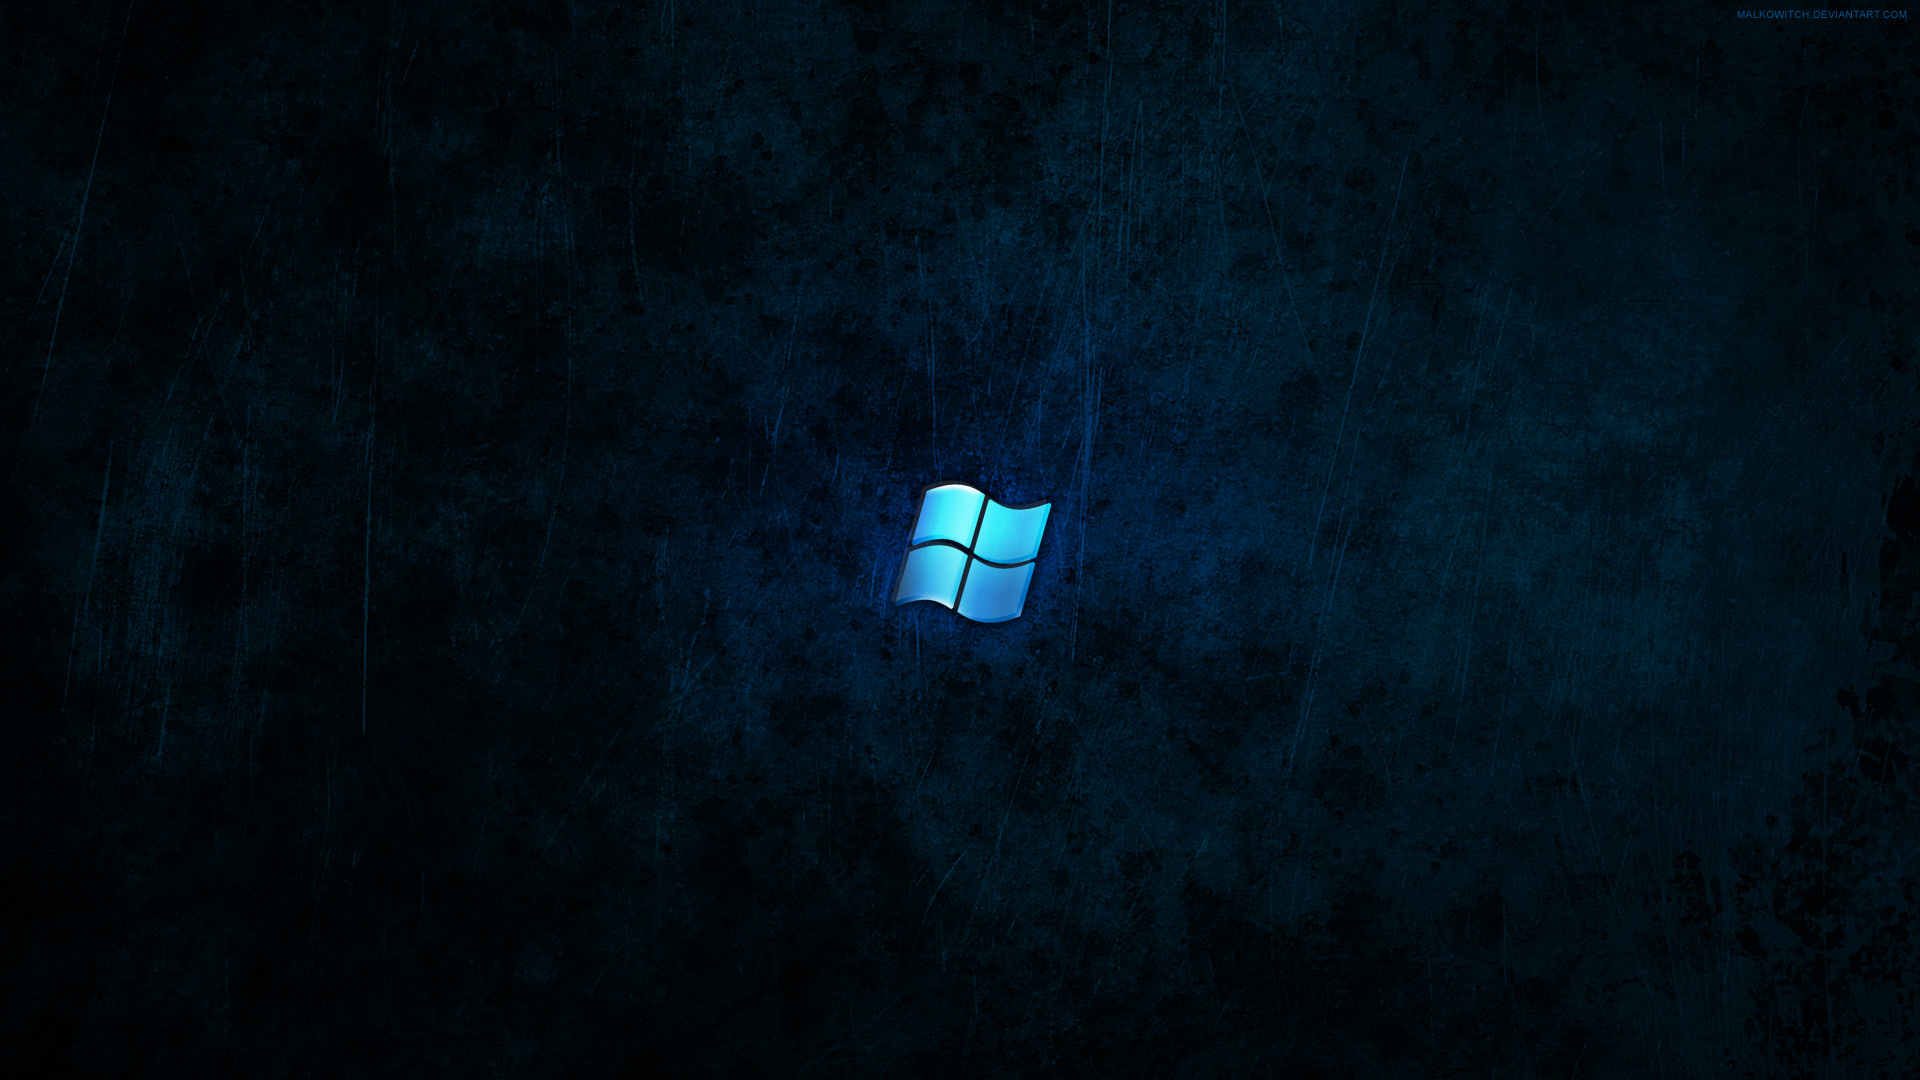 Hình nền Windows tối: Bạn yêu thích trang trí máy tính bằng hình nền khác nhau? Vậy hãy thử một chút \'tối tăm\' với hình nền Windows tối để tạo nên phong cách riêng biệt cho máy tính của bạn. Đảm bảo hình nền sẽ khiến màn hình máy tính của bạn trở nên bí ẩn và đẹp mắt.